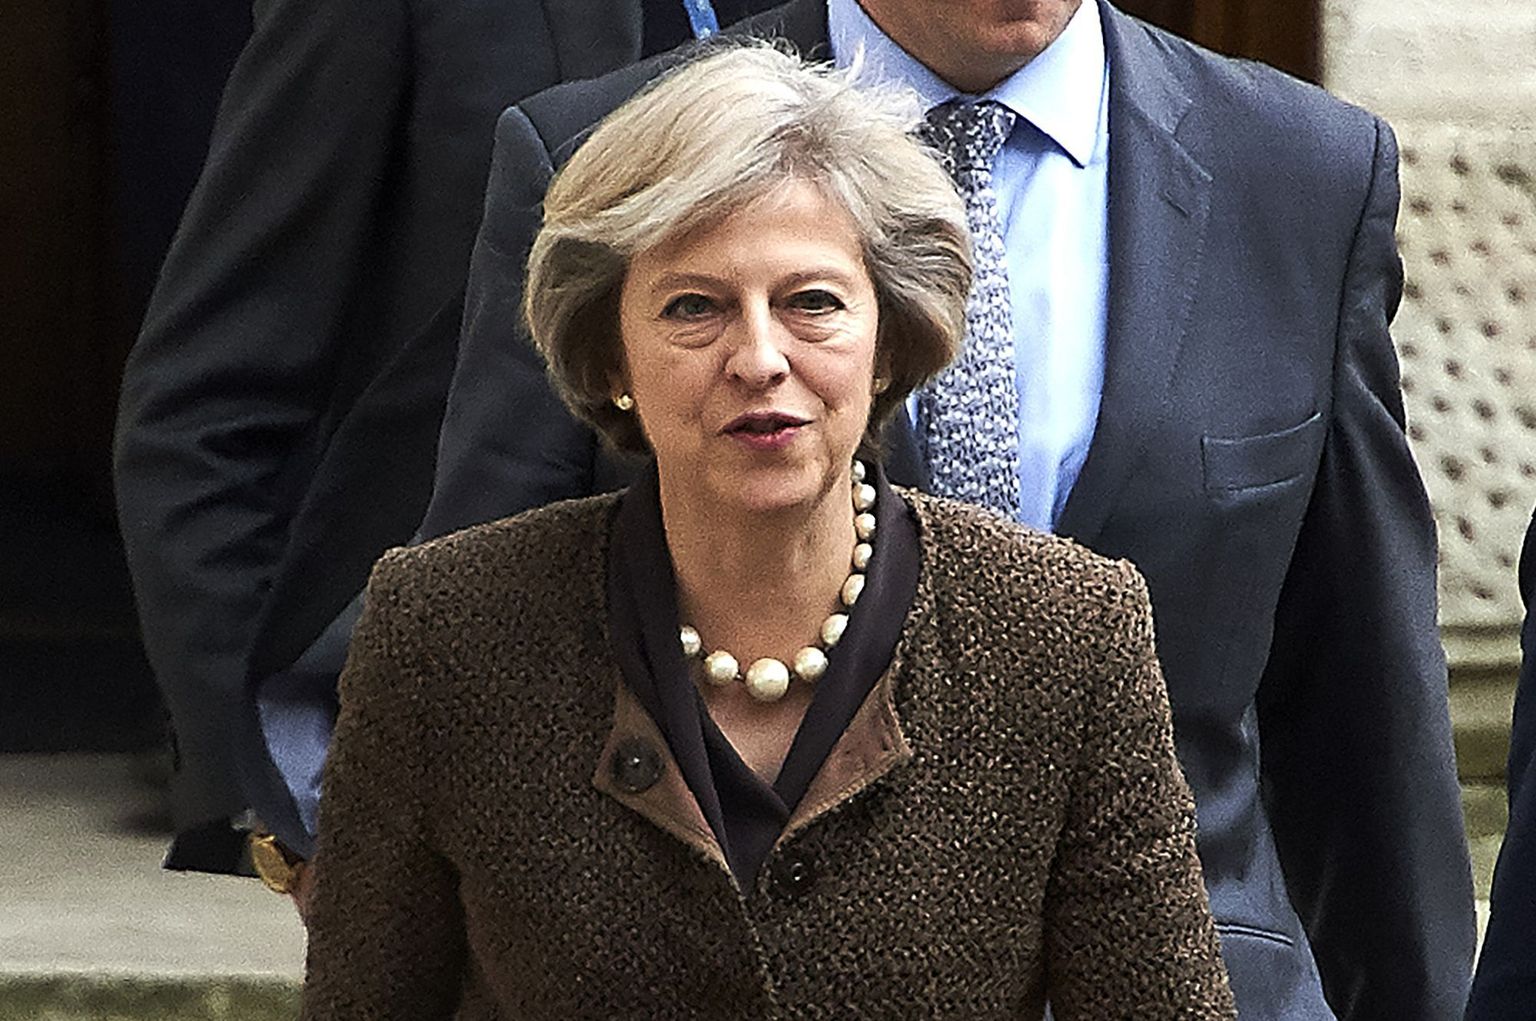 Briti peaministri Theresa May hiljutine kõne Konservatiivide parteikongressil tegi Brüsseli murelikuks.